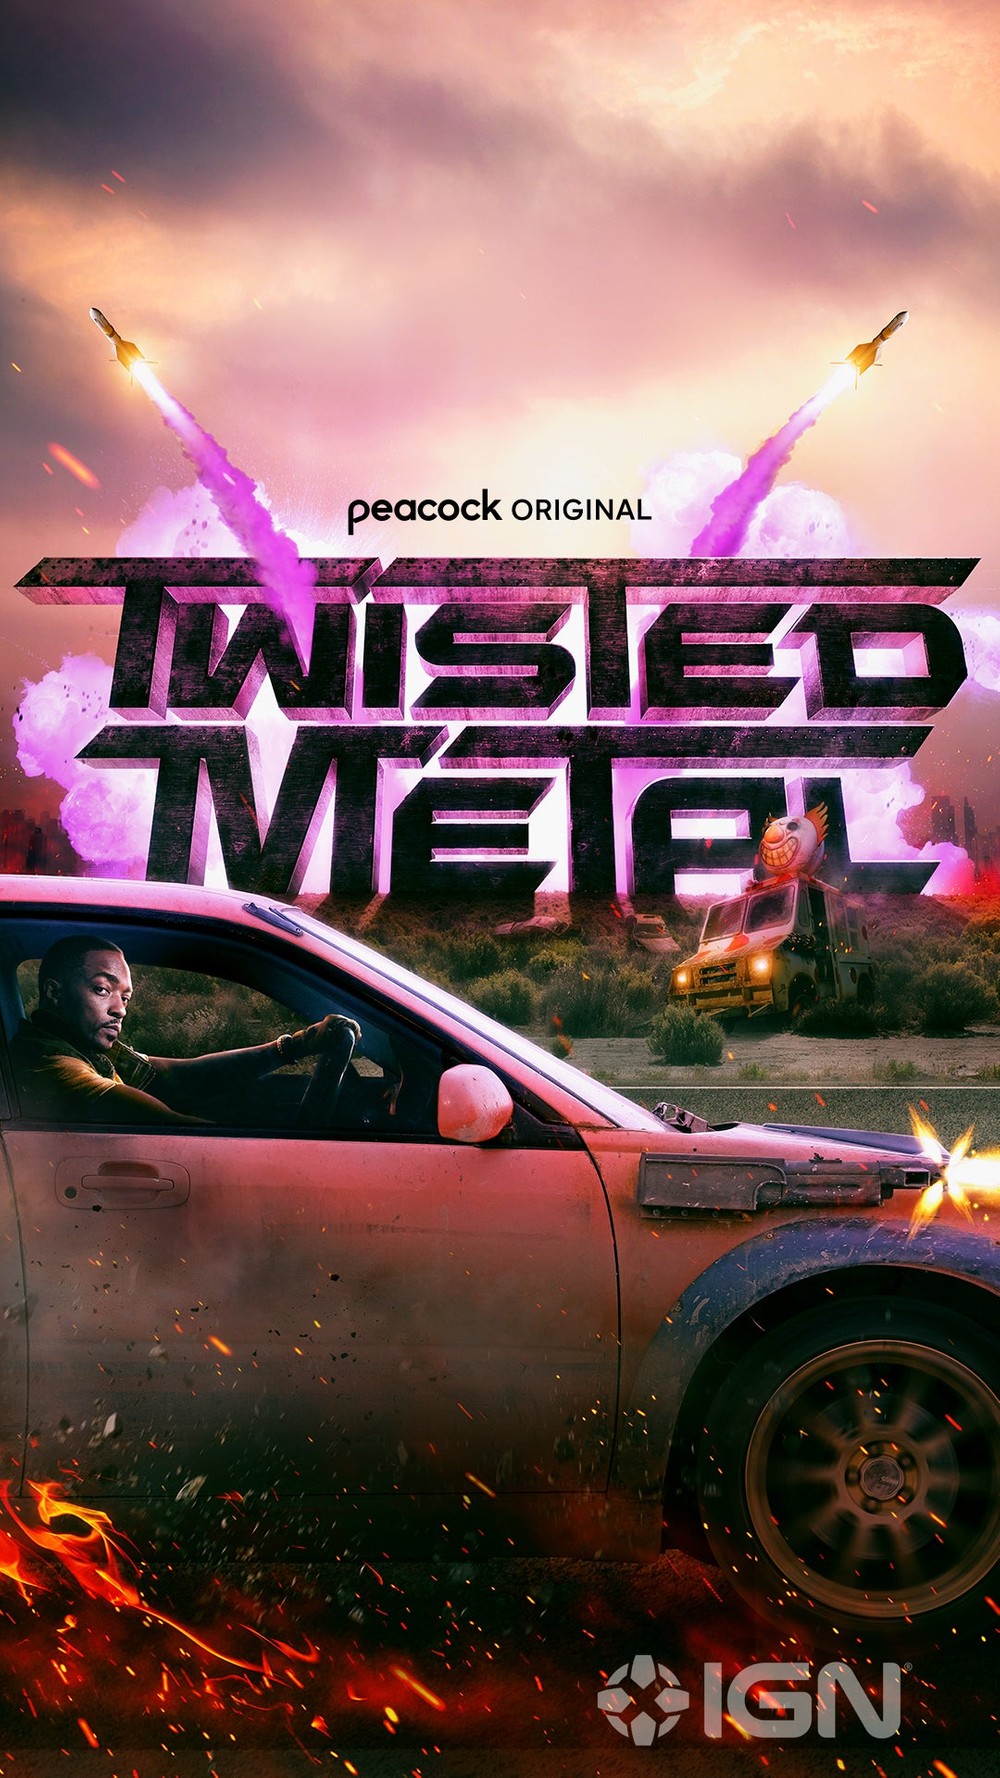 Novo Twisted Metal pode estar em produção para o PlayStation 5 – Tecnoblog